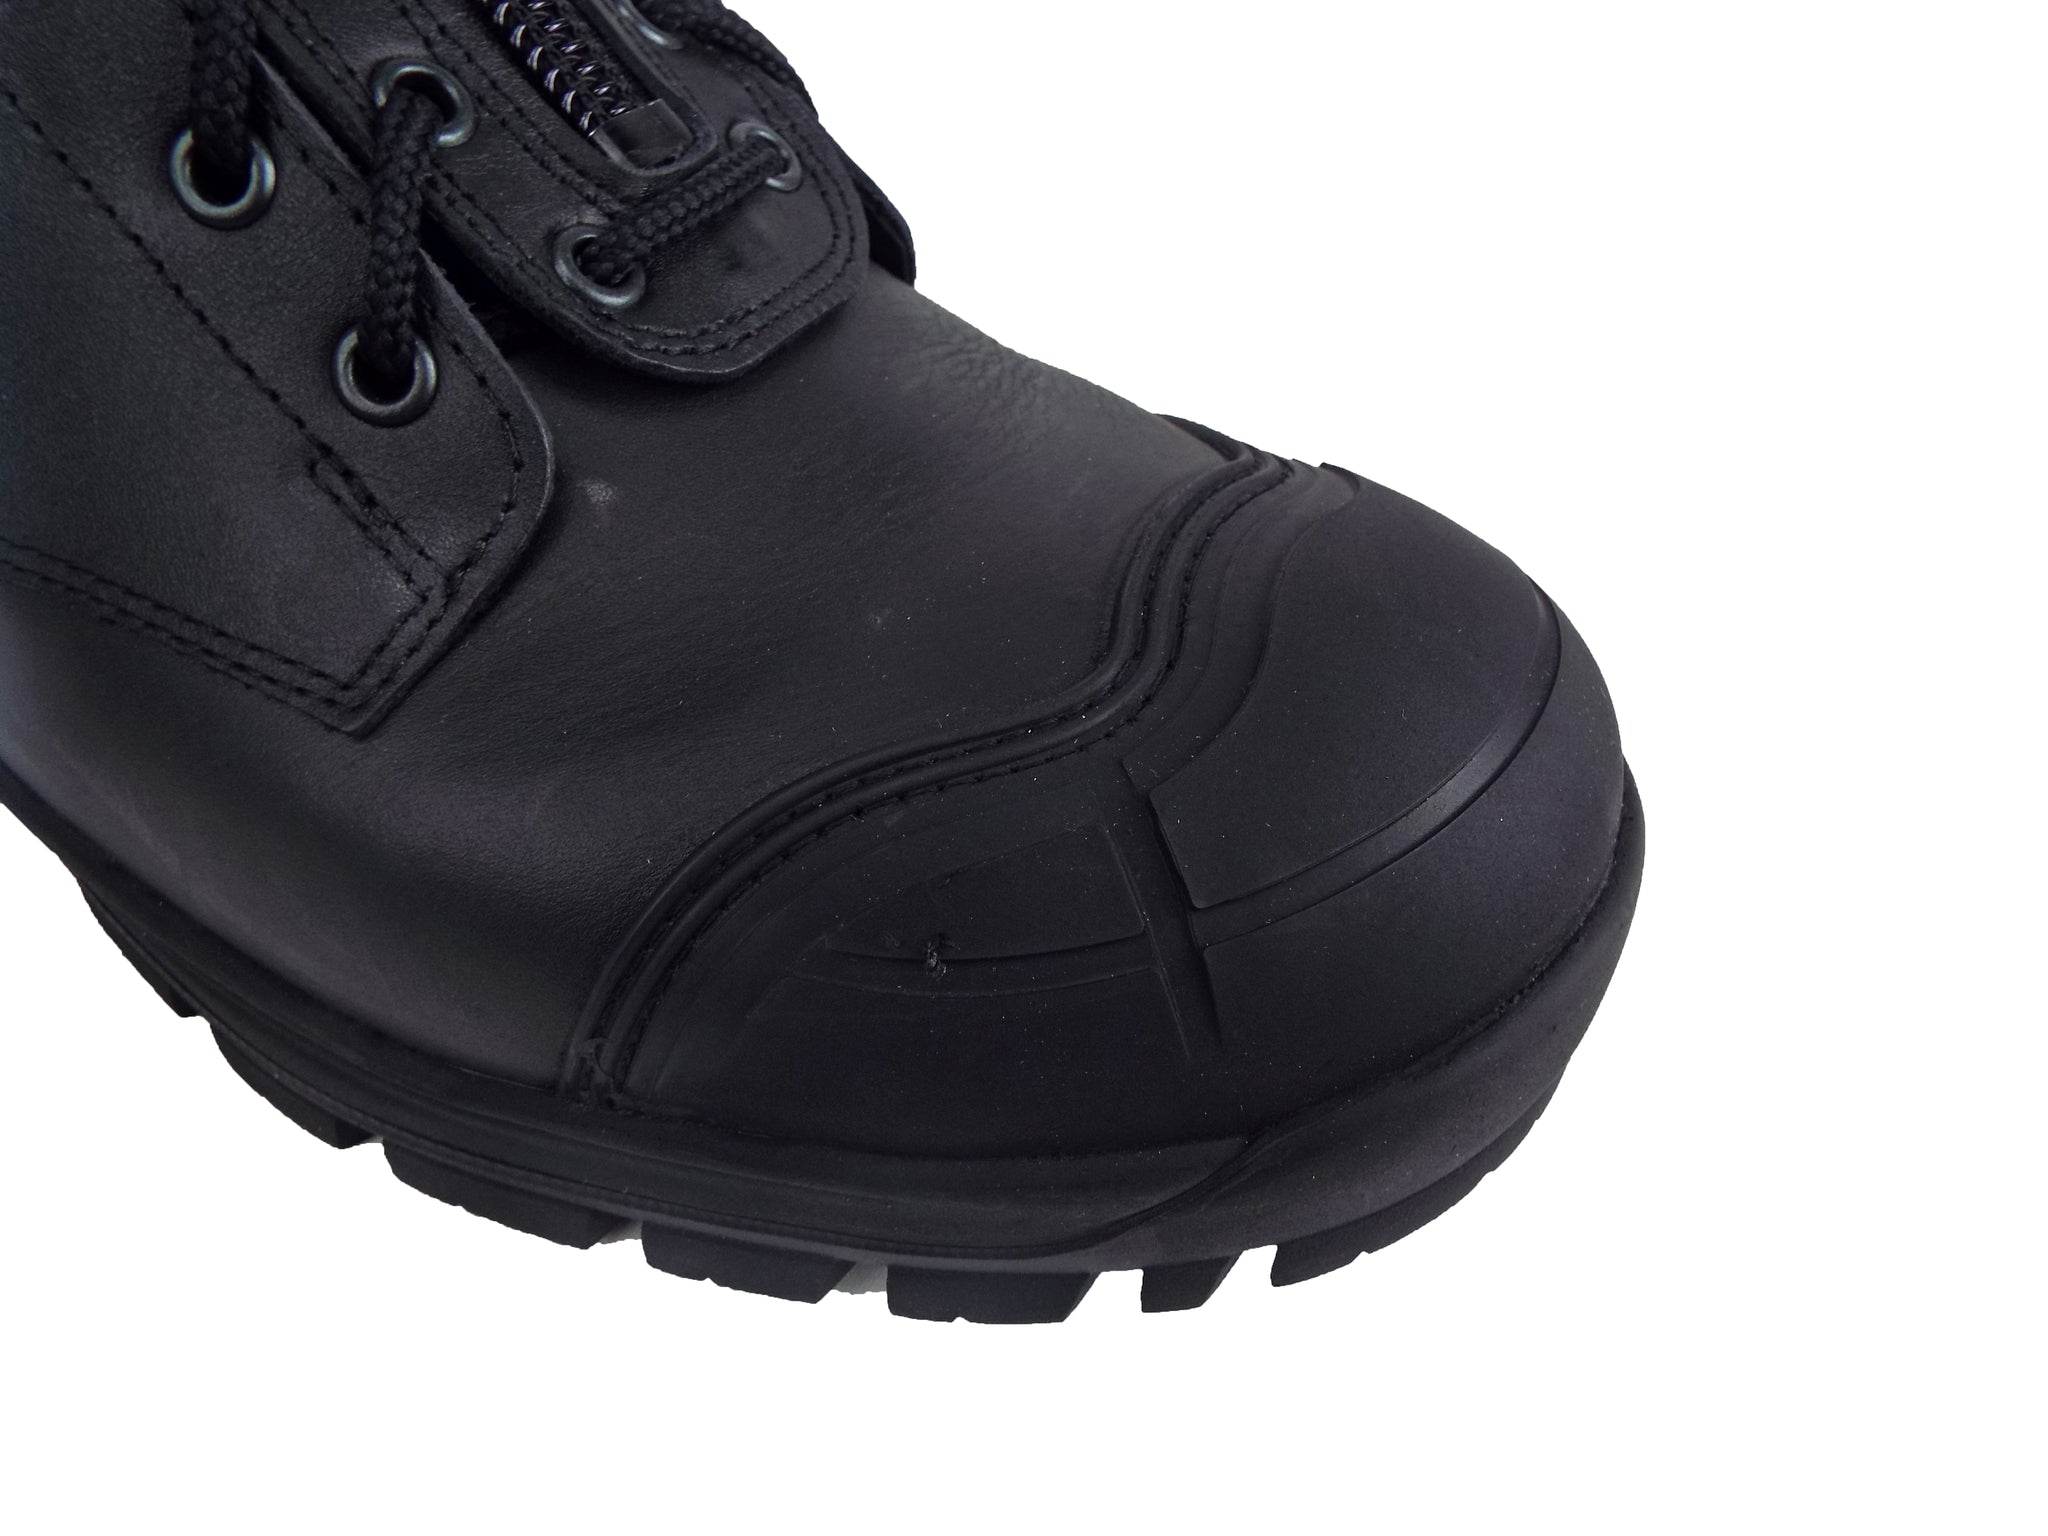 Men's Work Boots - Steel Toe & Rubber Shield Wellington Work Boots